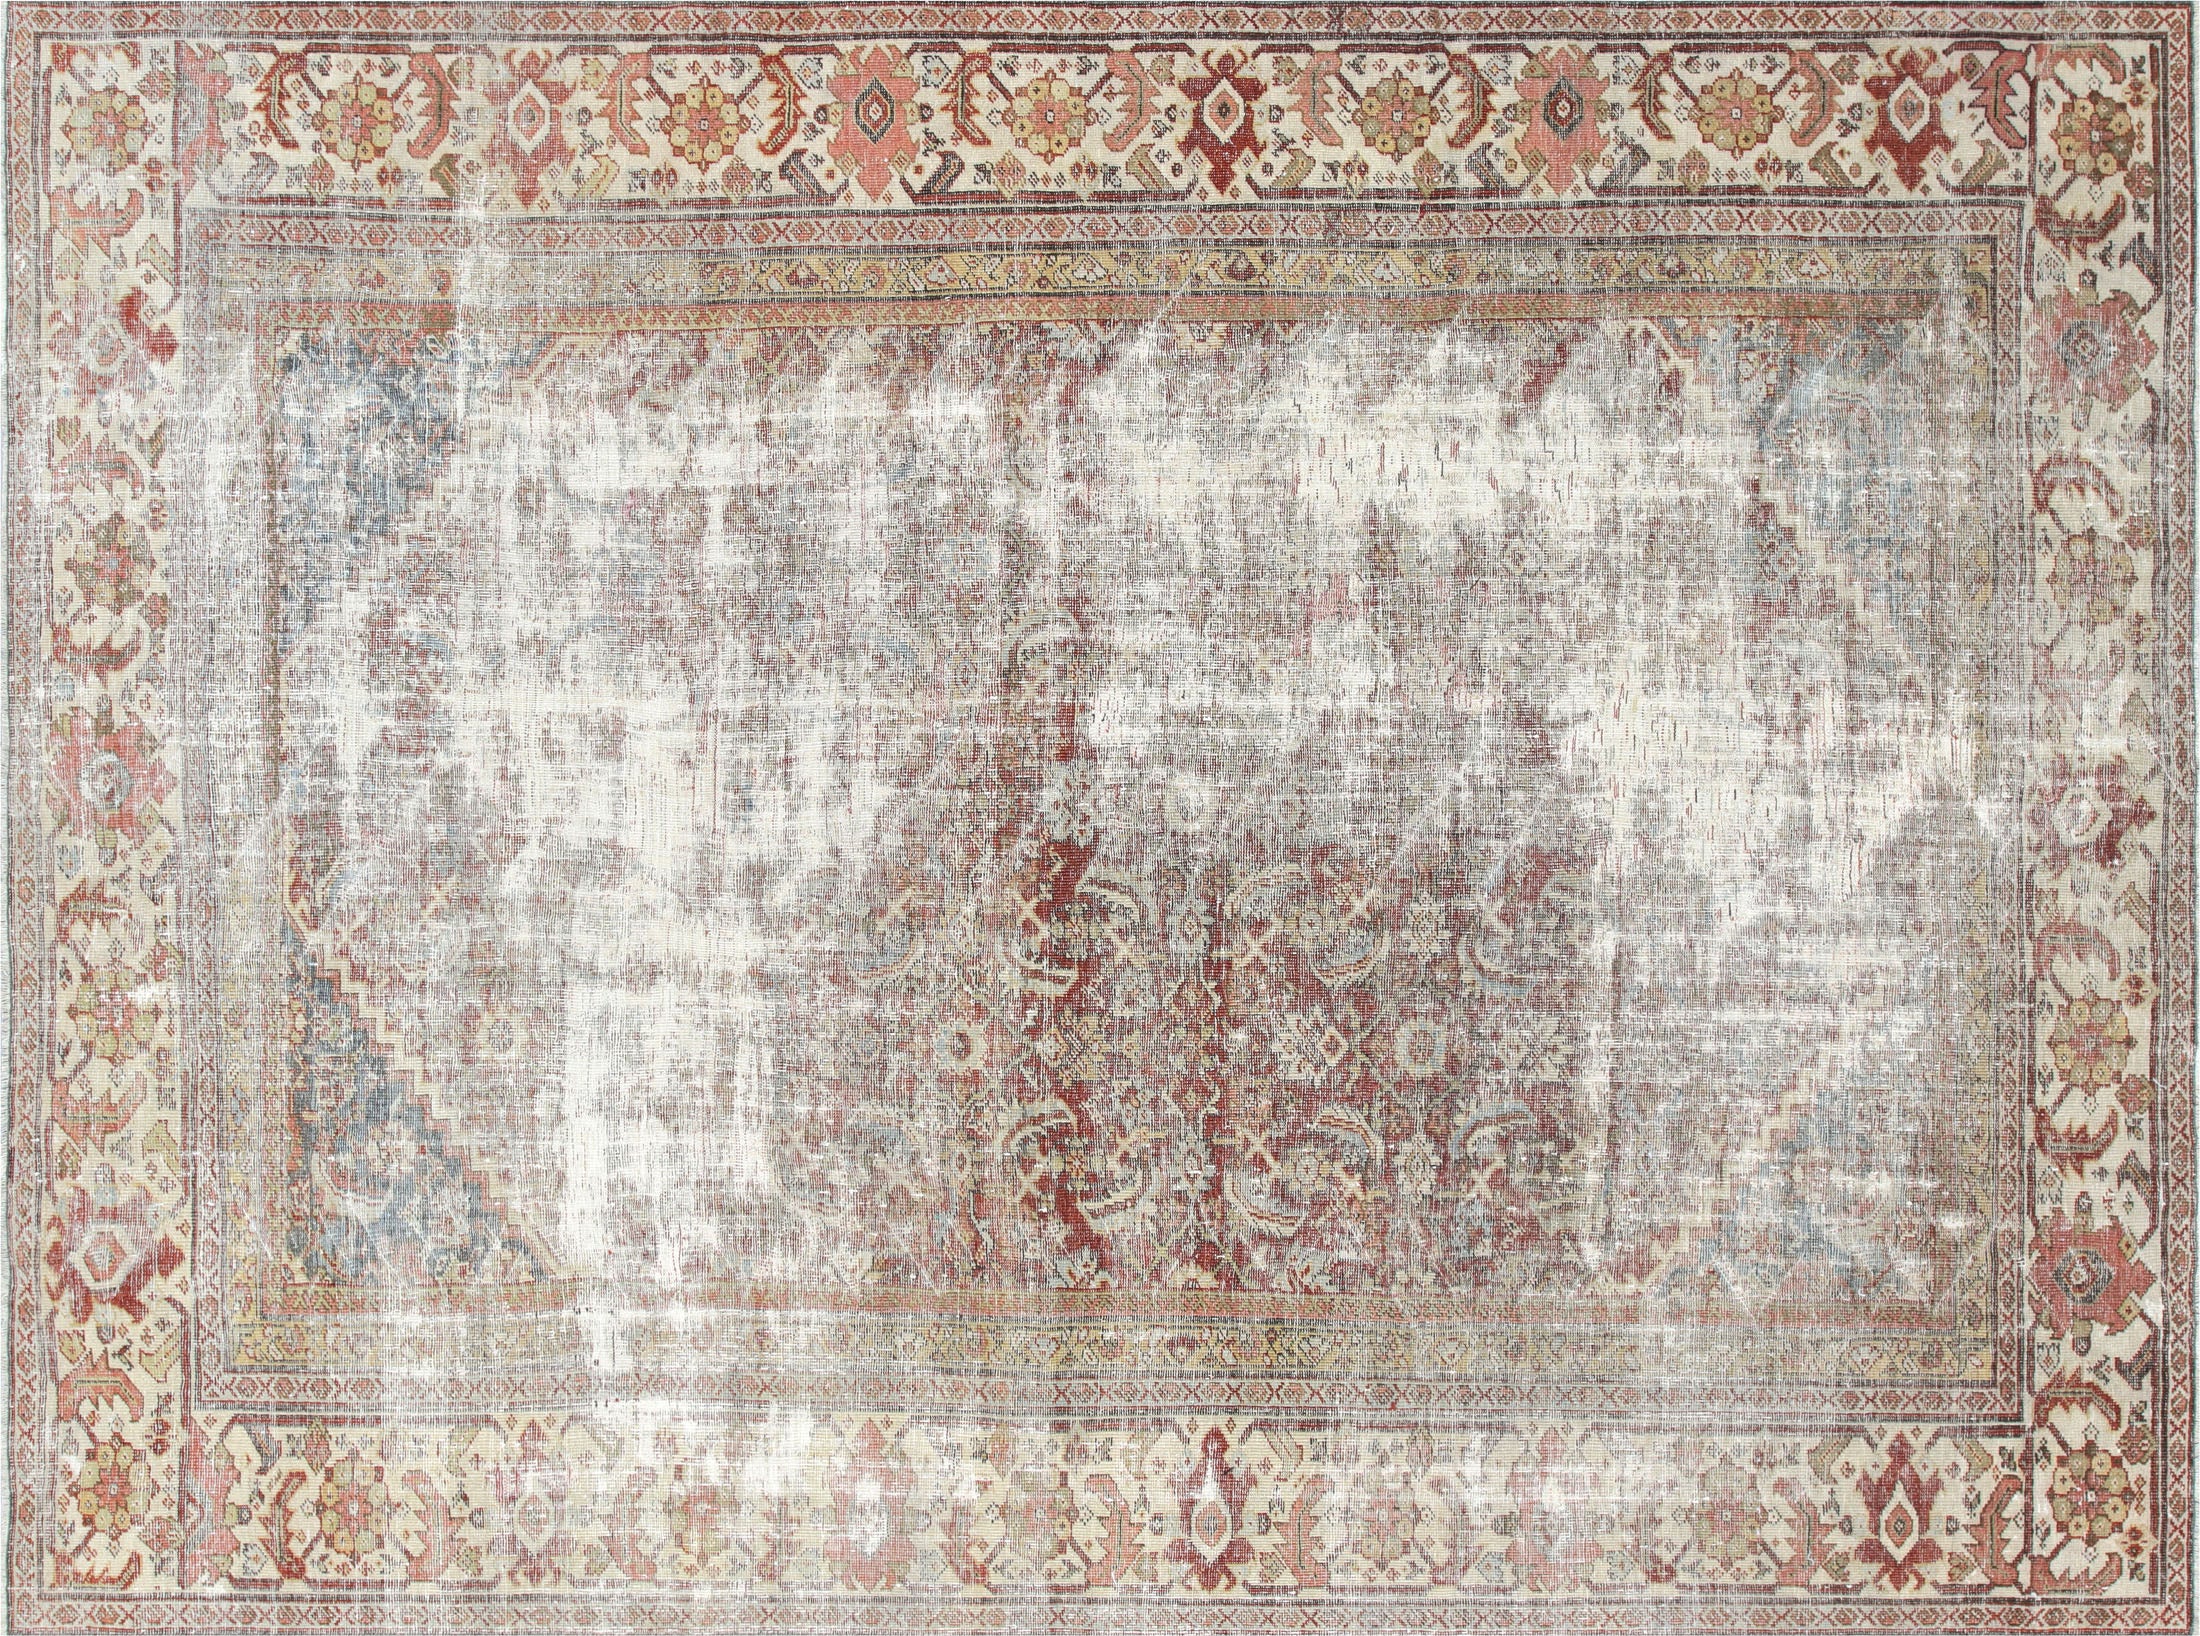 Antique Persian Mahal Rug - 8'4" x 11'6"